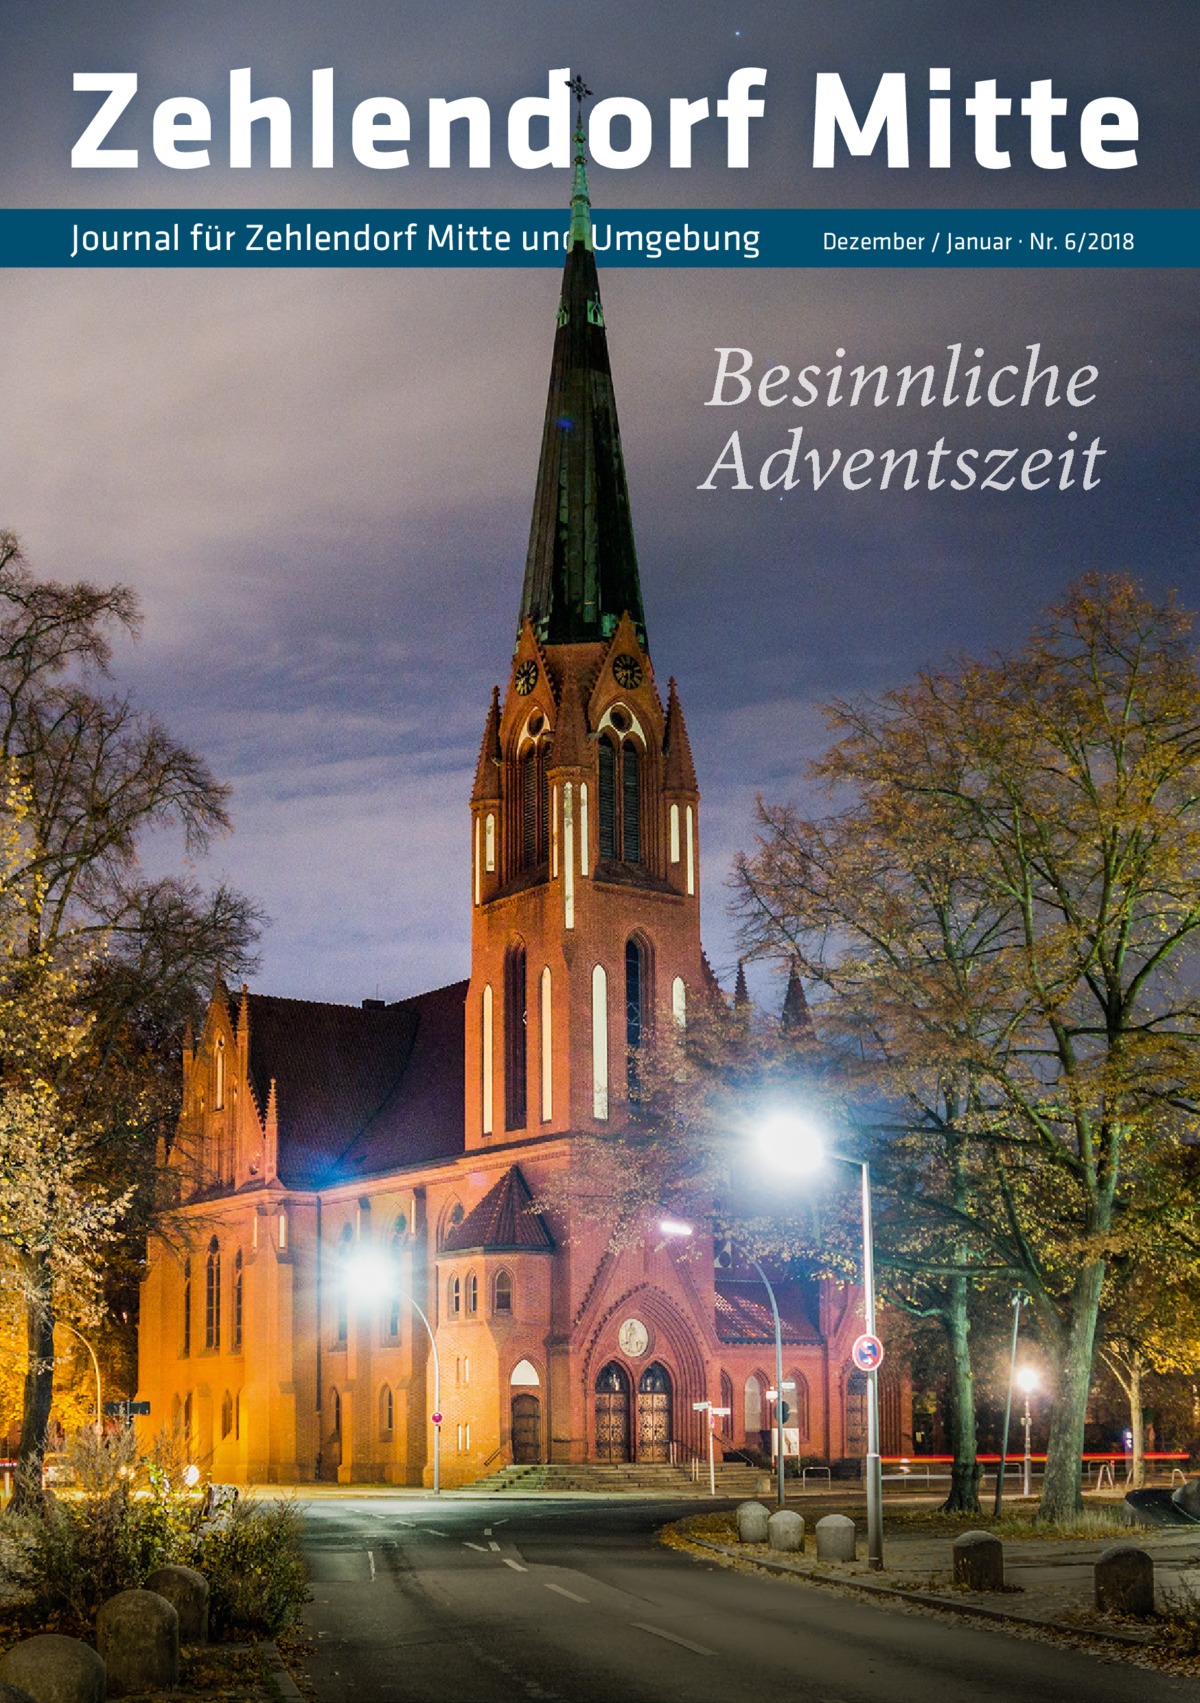 Zehlendorf Mitte Journal für Zehlendorf Mitte und Umgebung  Dezember / Januar · Nr. 6/2018  Besinnliche Adventszeit